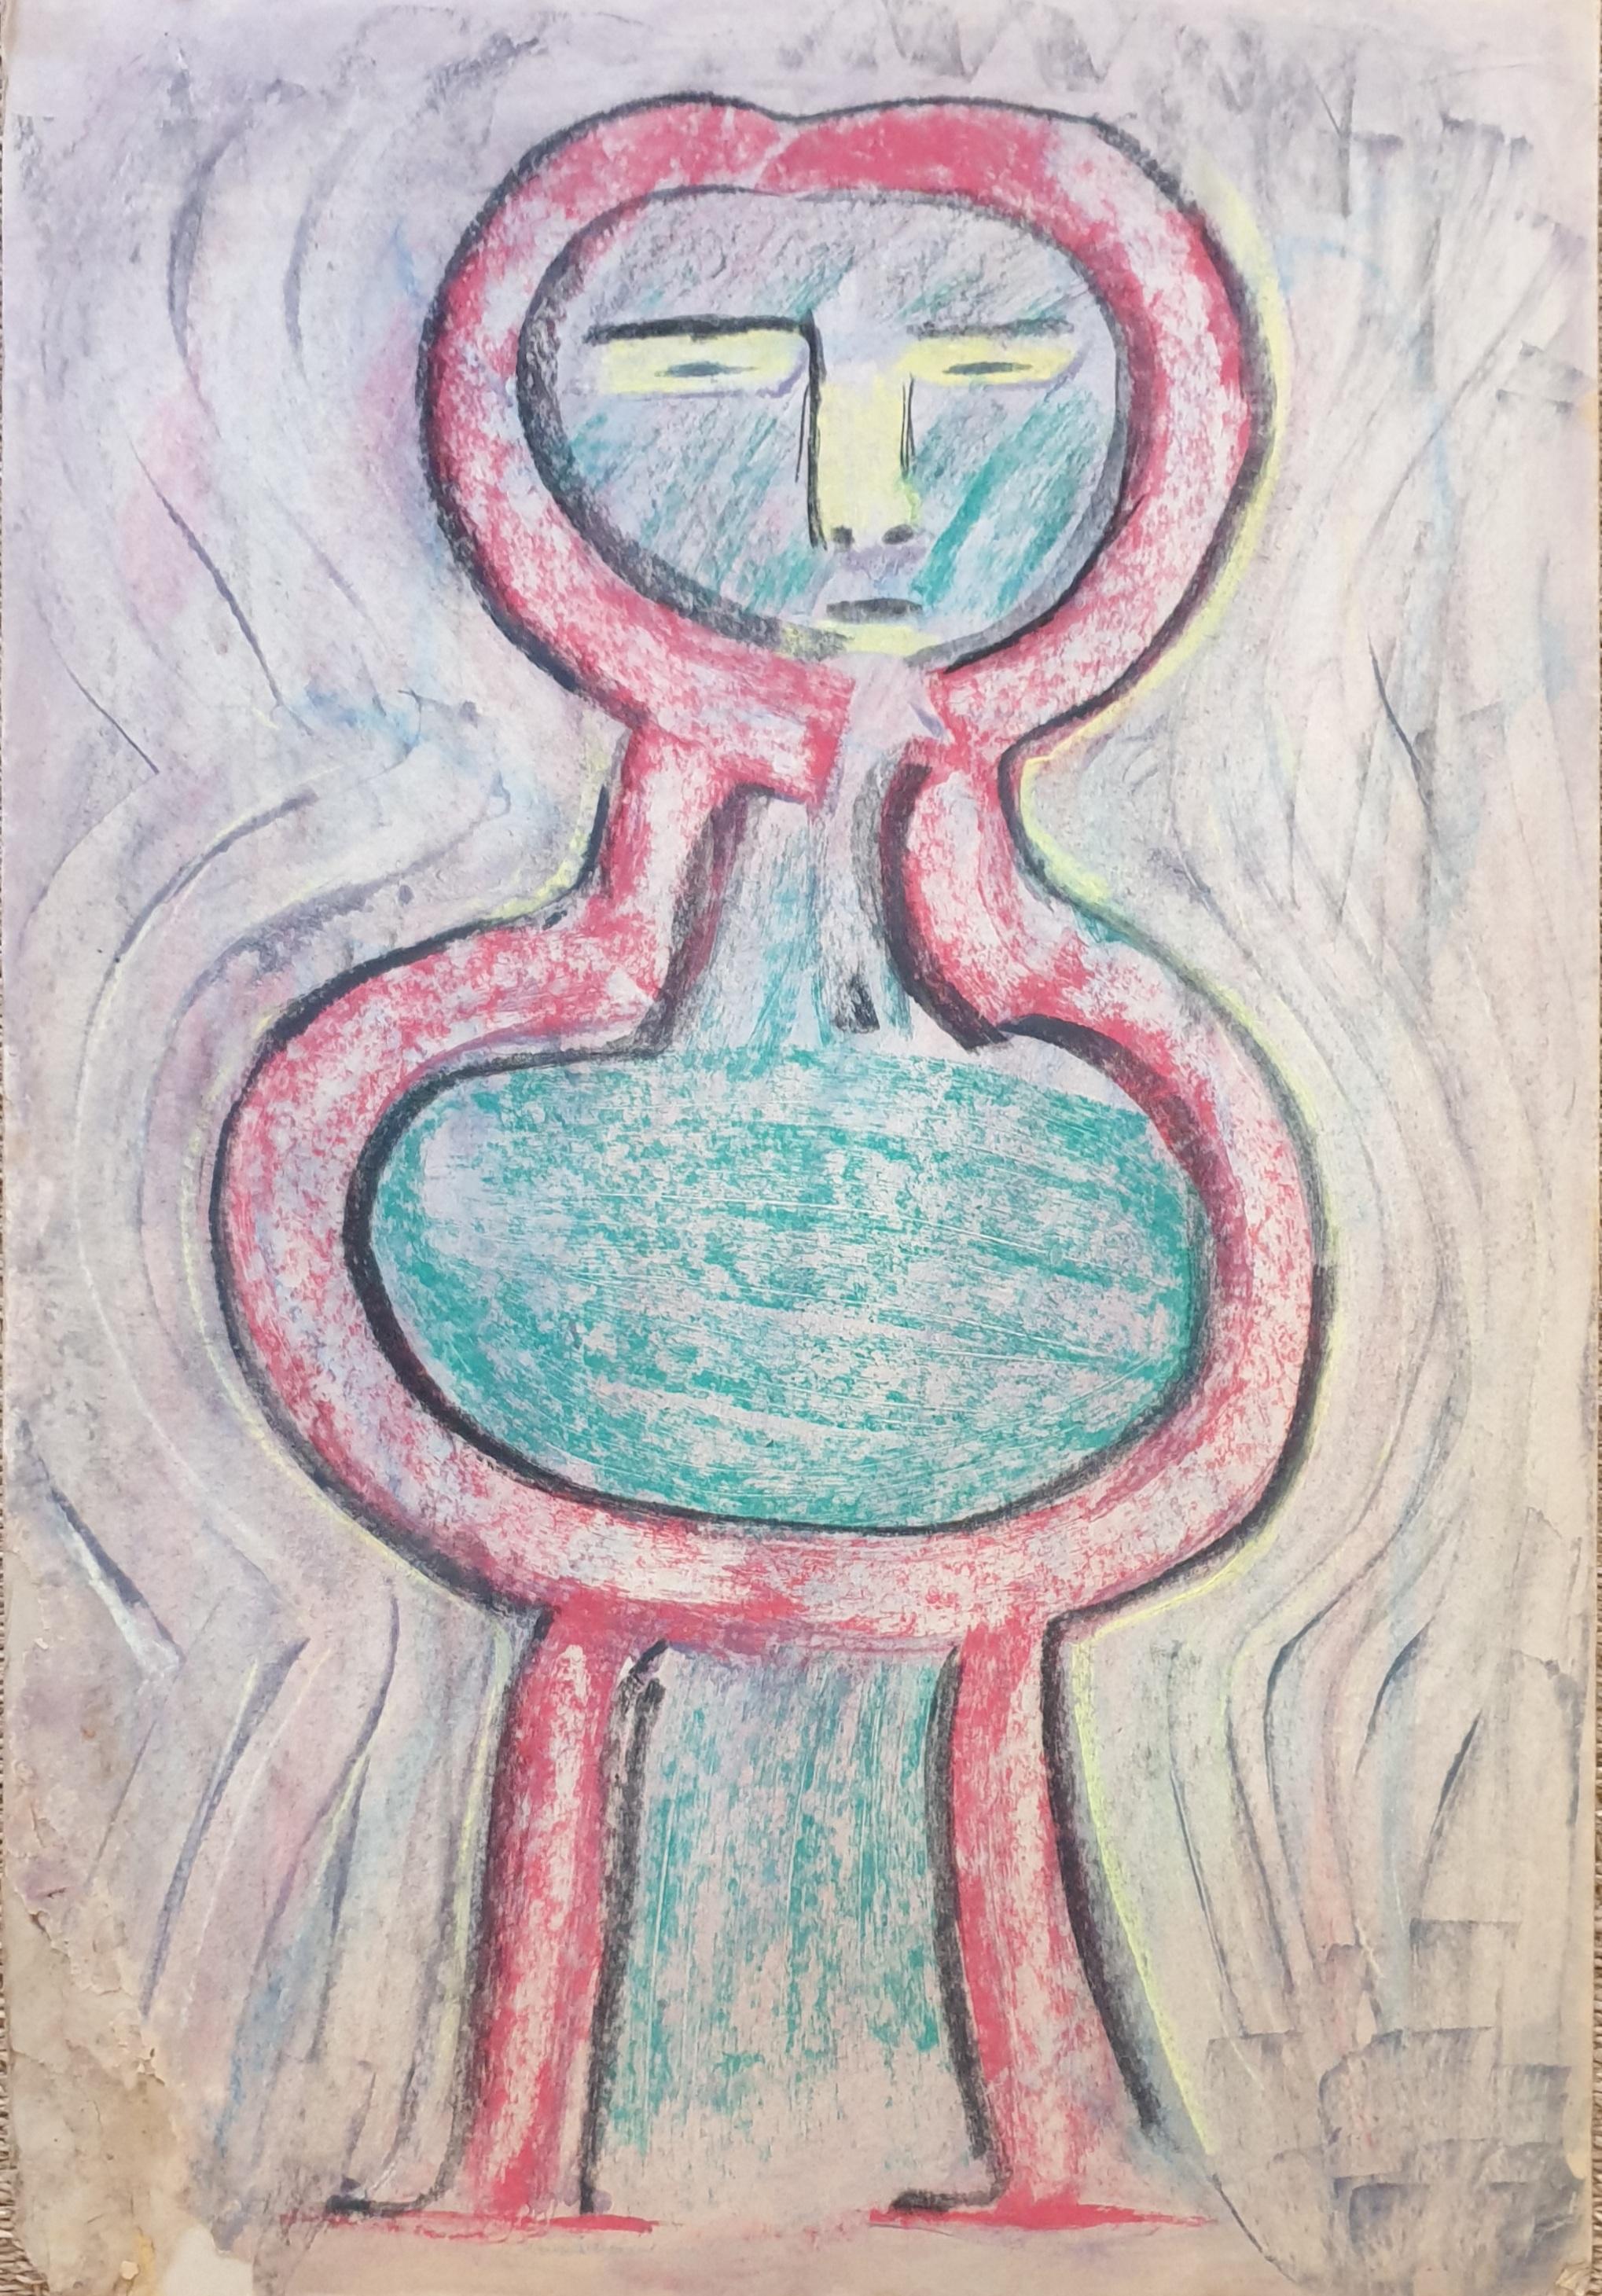 Abstrakte expressionistische Figur im CoBrA-Stil. Chalk auf Karton.